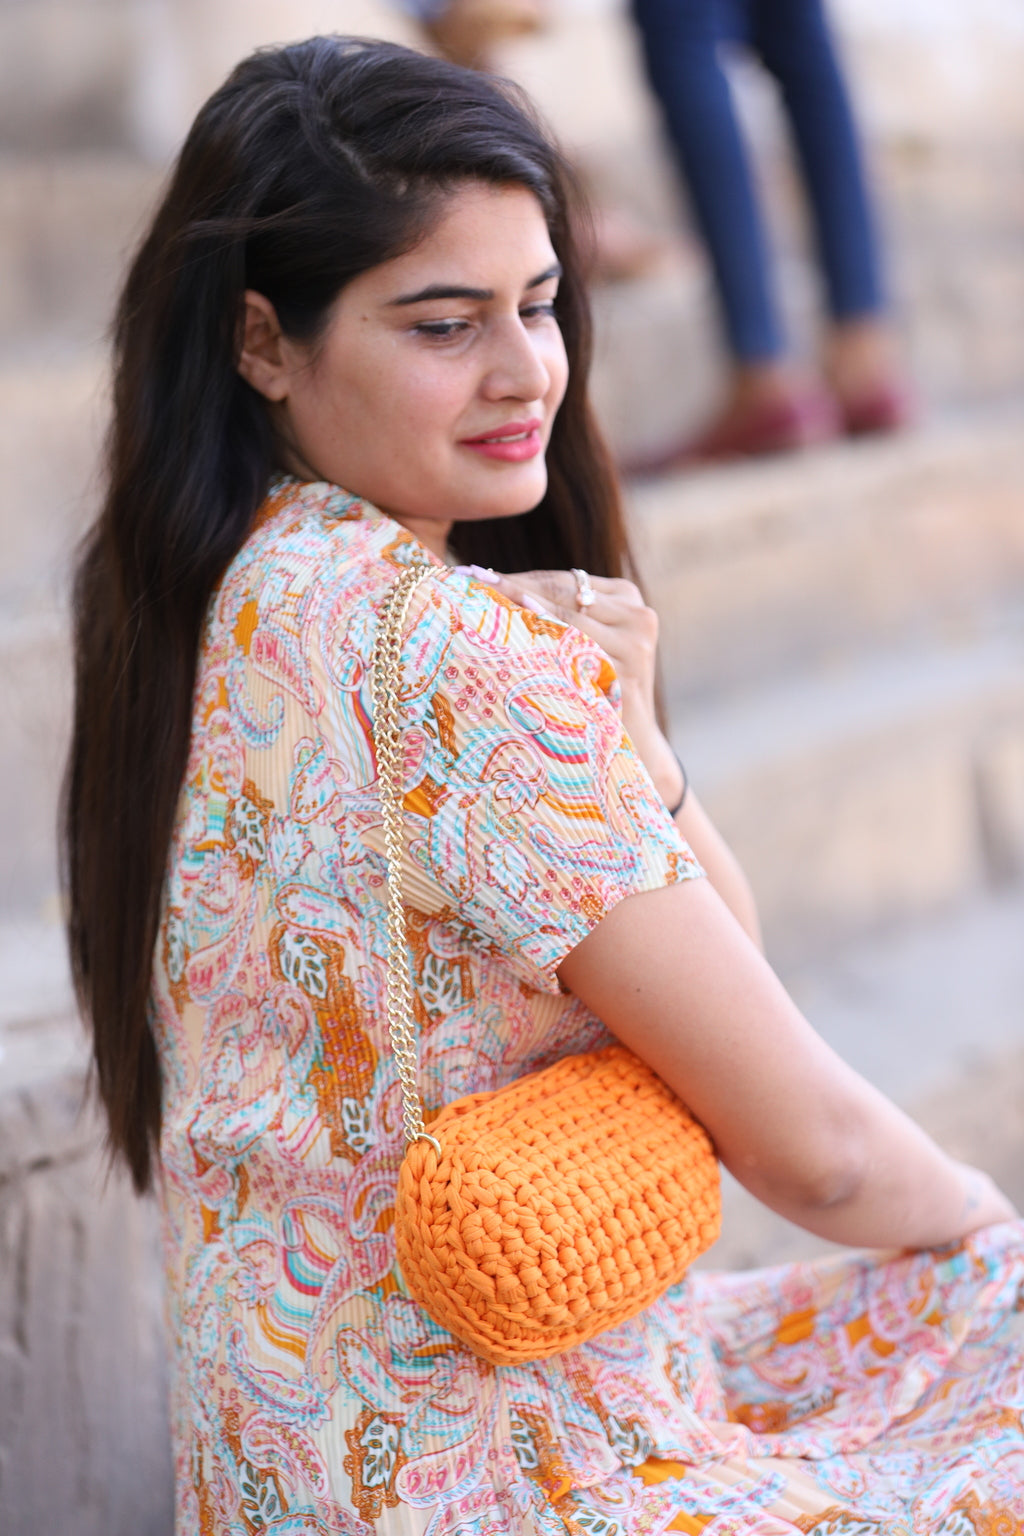 Handmade Orange Crochet Bag